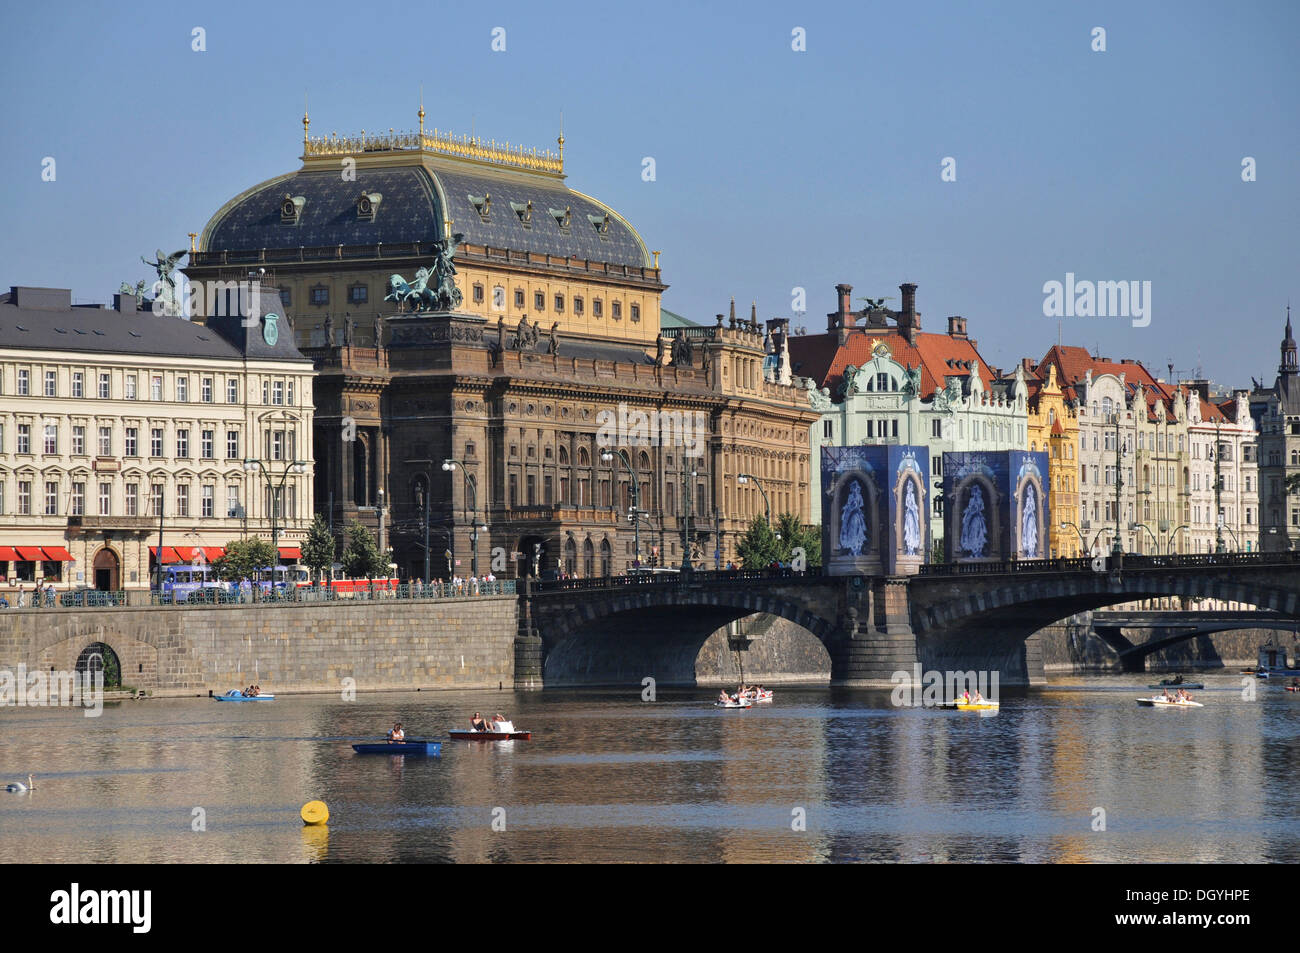 Théâtre national narodni divadlo, légion, pont, vieille ville, Prague, République tchèque, Europe Banque D'Images